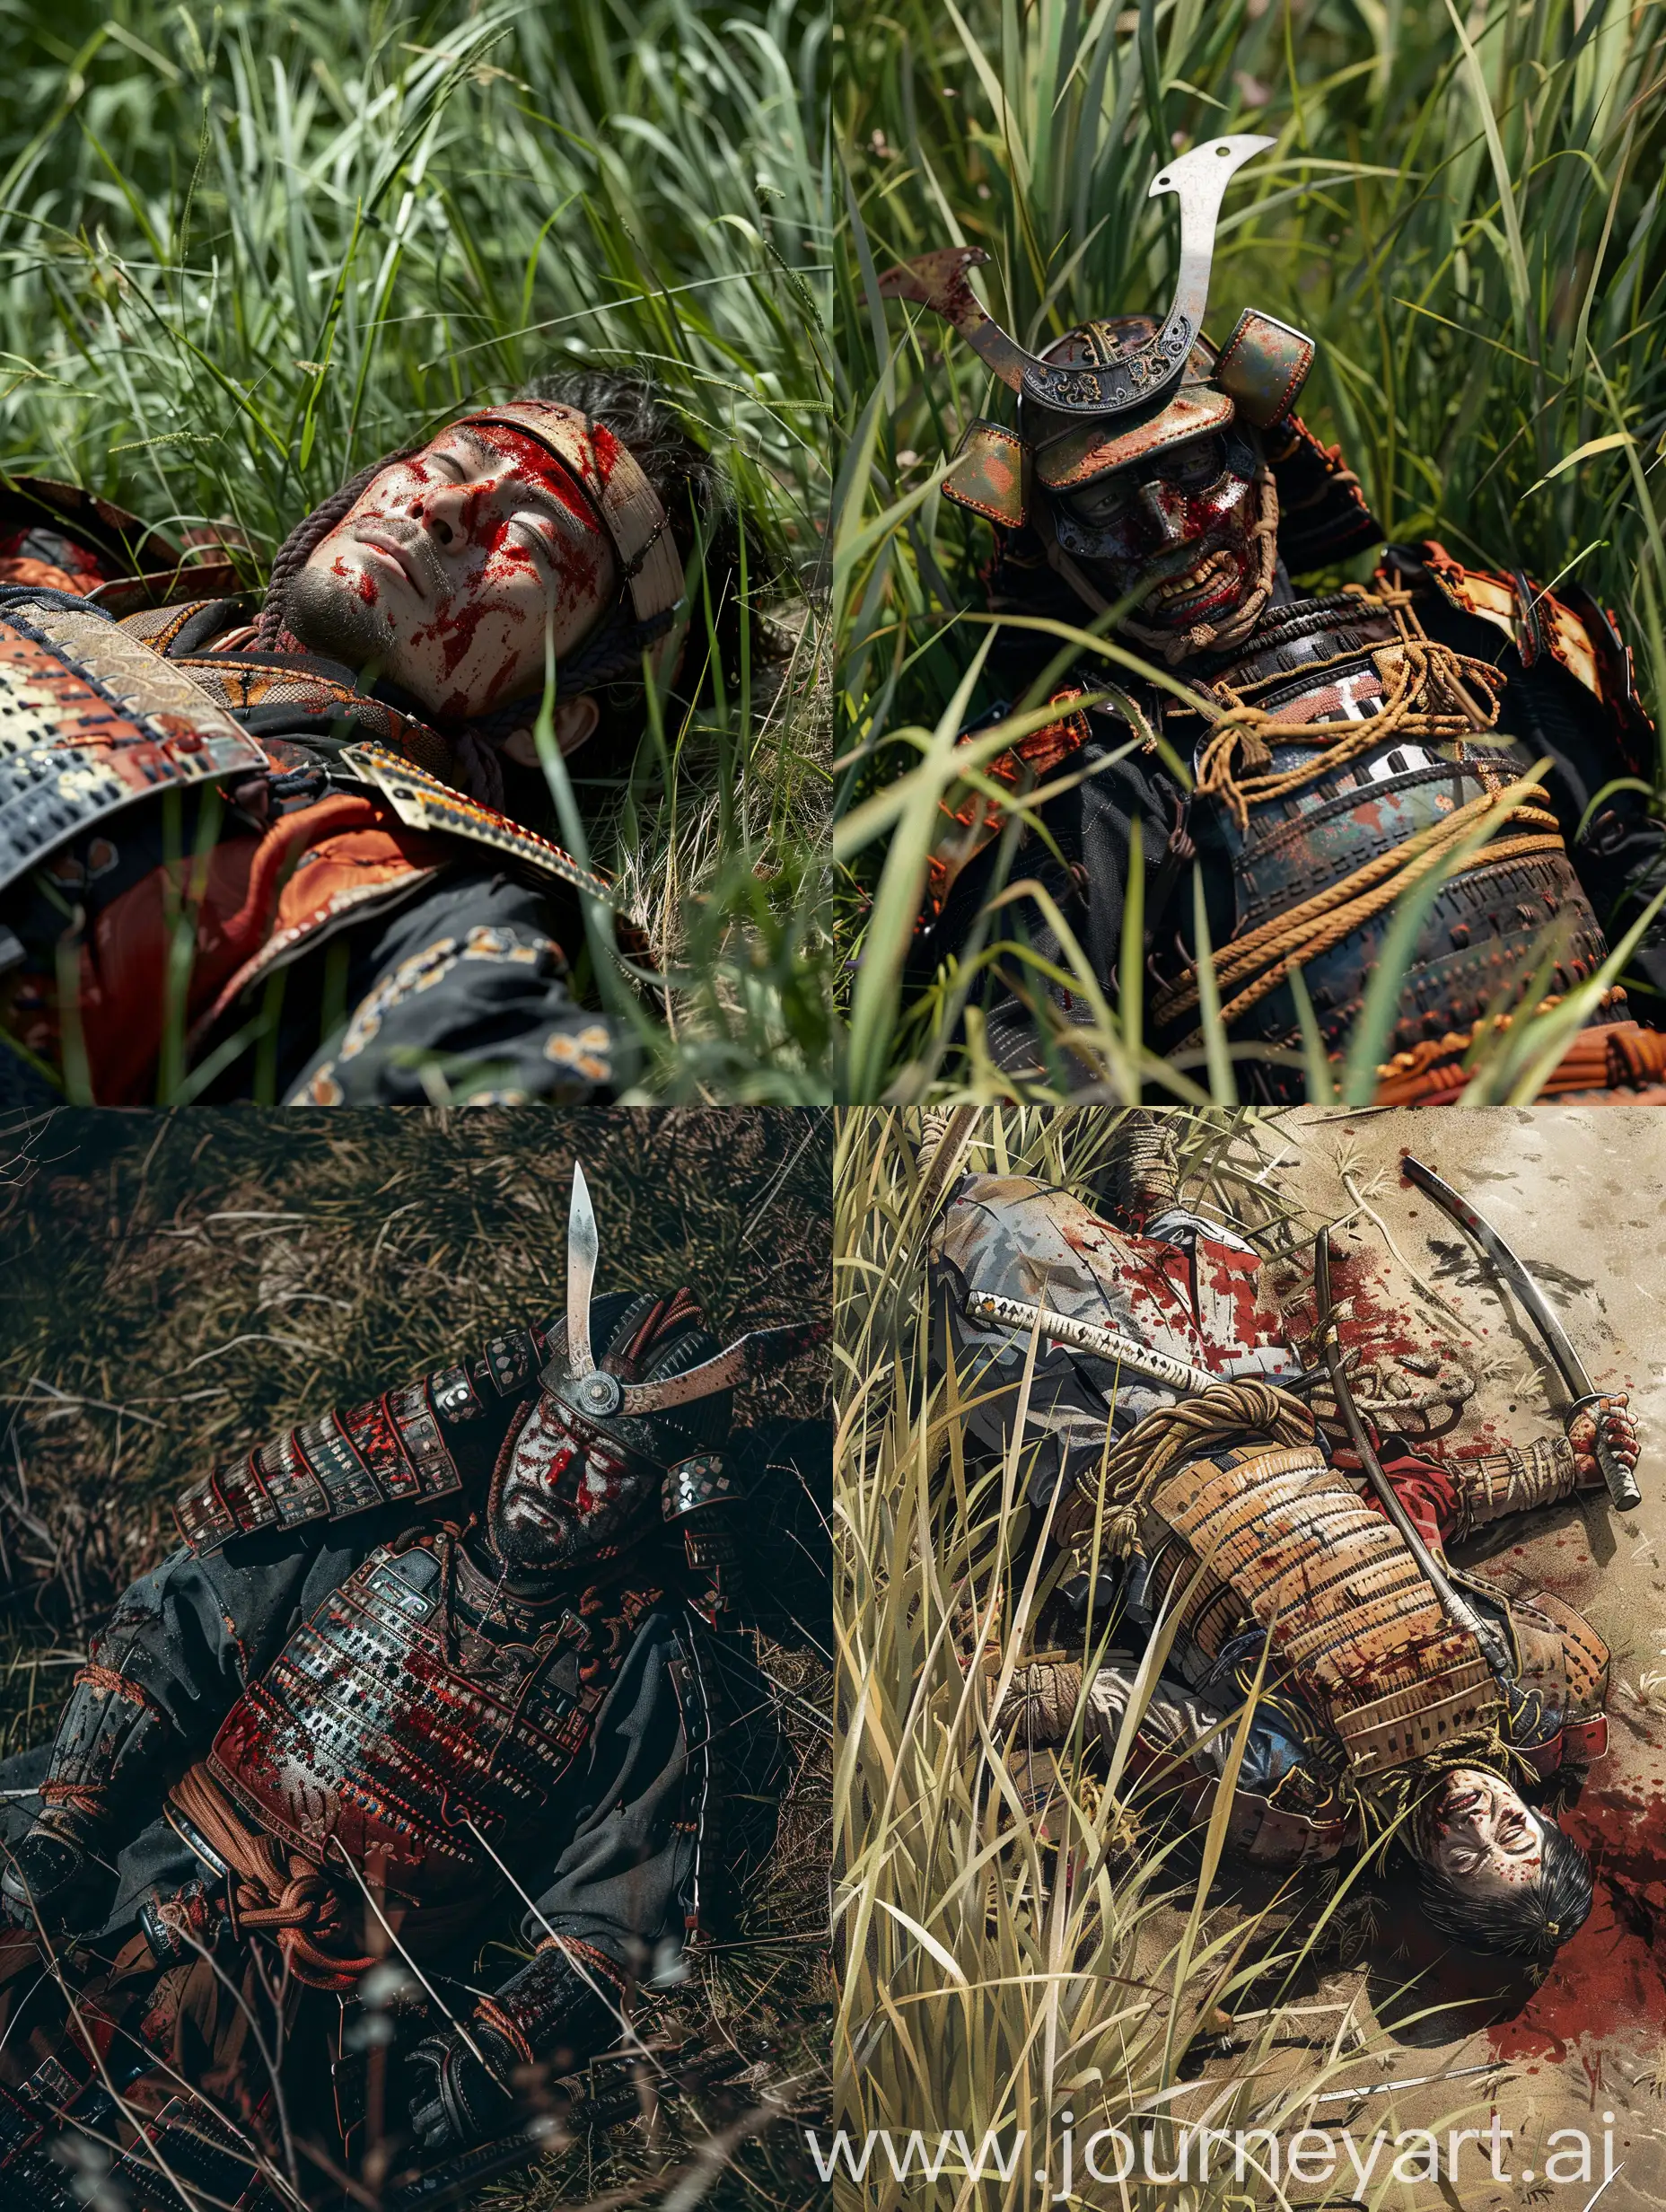 Fallen-Samurai-Resting-in-Spring-Grass-After-Fierce-Battle